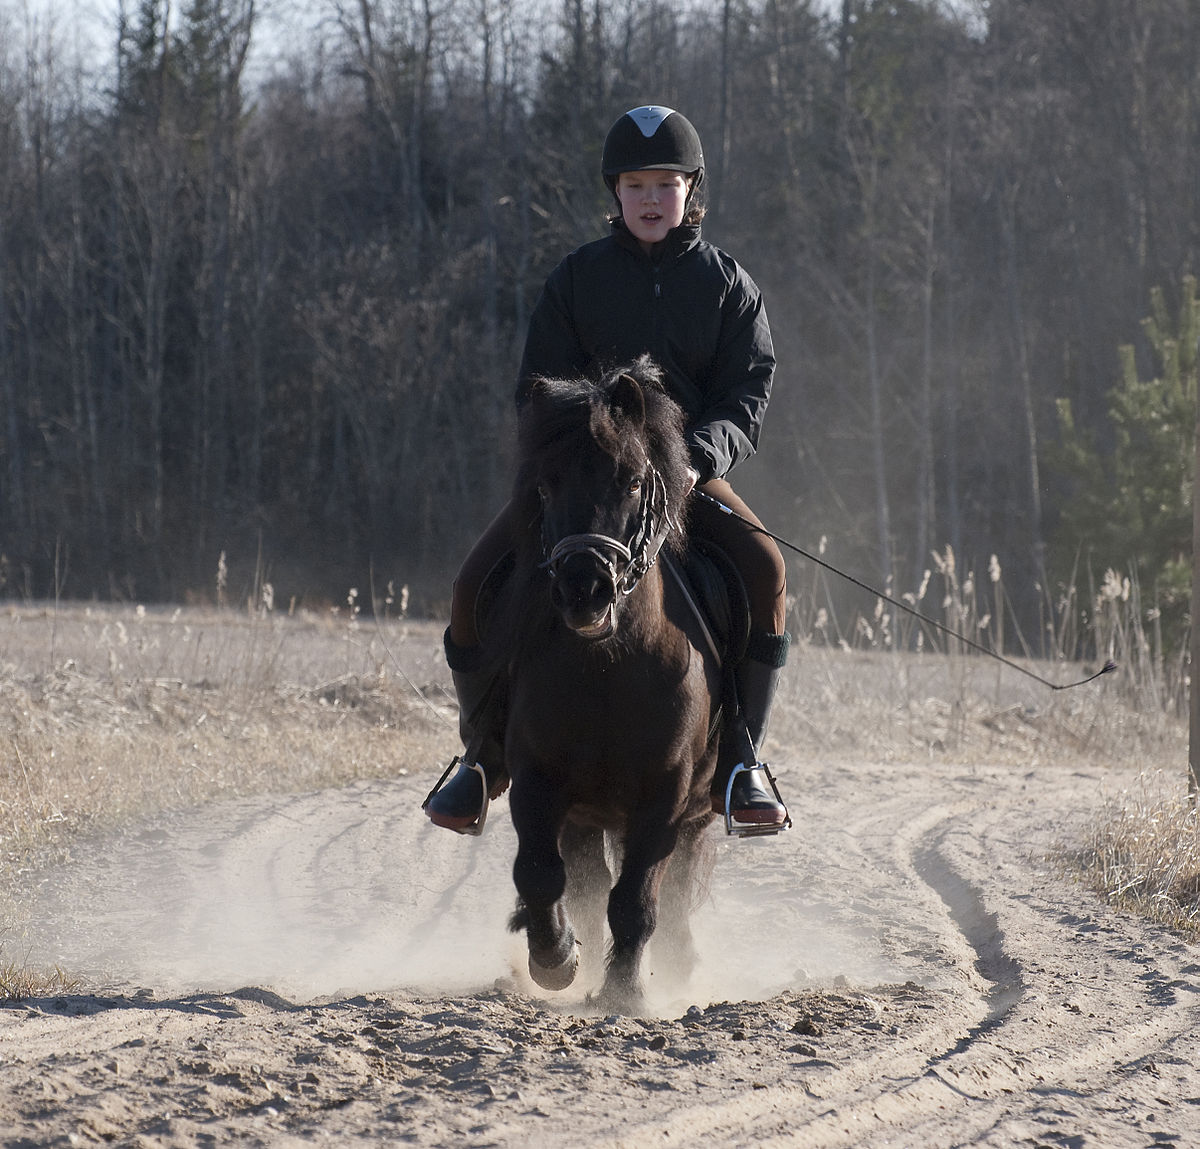 Ngựa Shetland được dùng trong trung tâm huấn luyện đua ngựa dành cho trẻ em